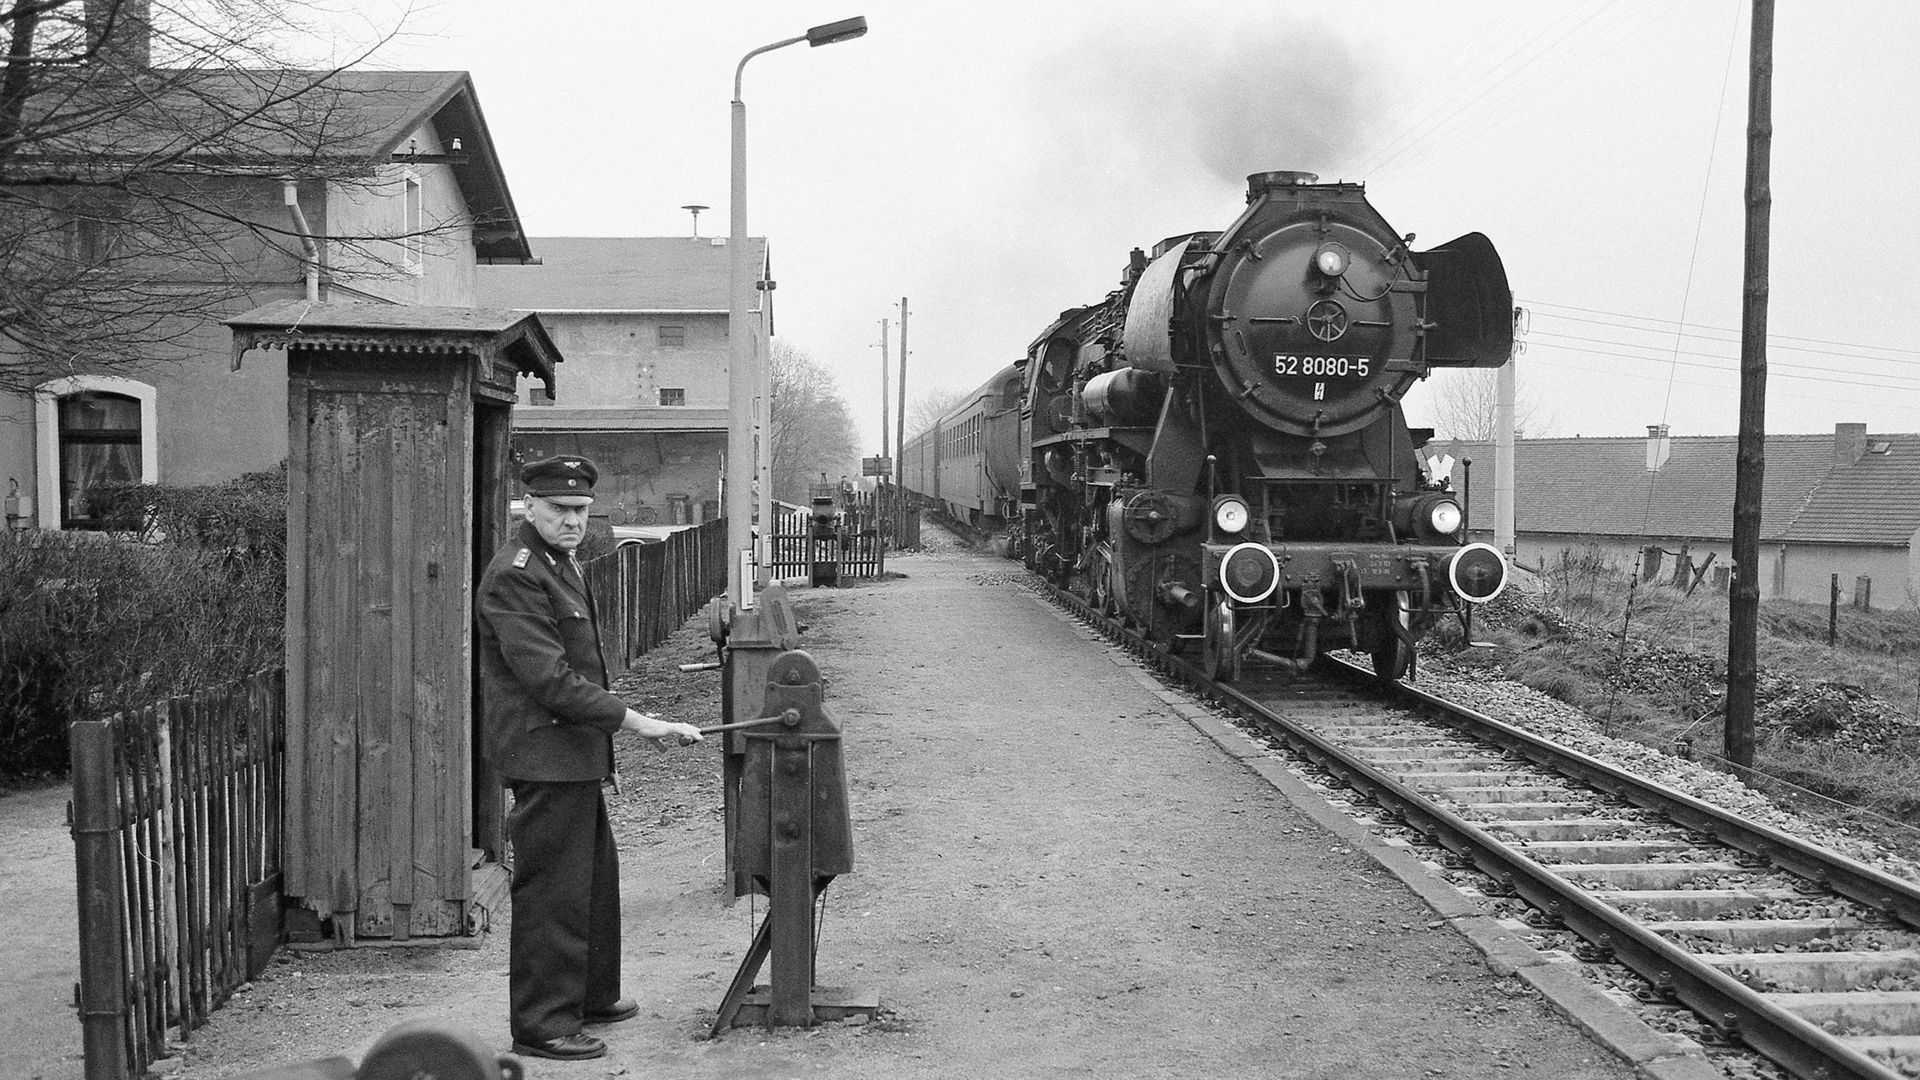 Eine Schwarzweiß-Fotografie: Auf einem Bahnsteig in ländlicher Umgebung steht ein älterer Schrankenkwärter in Uniform. Von hinten nähert sich eine Dampflokomotive.